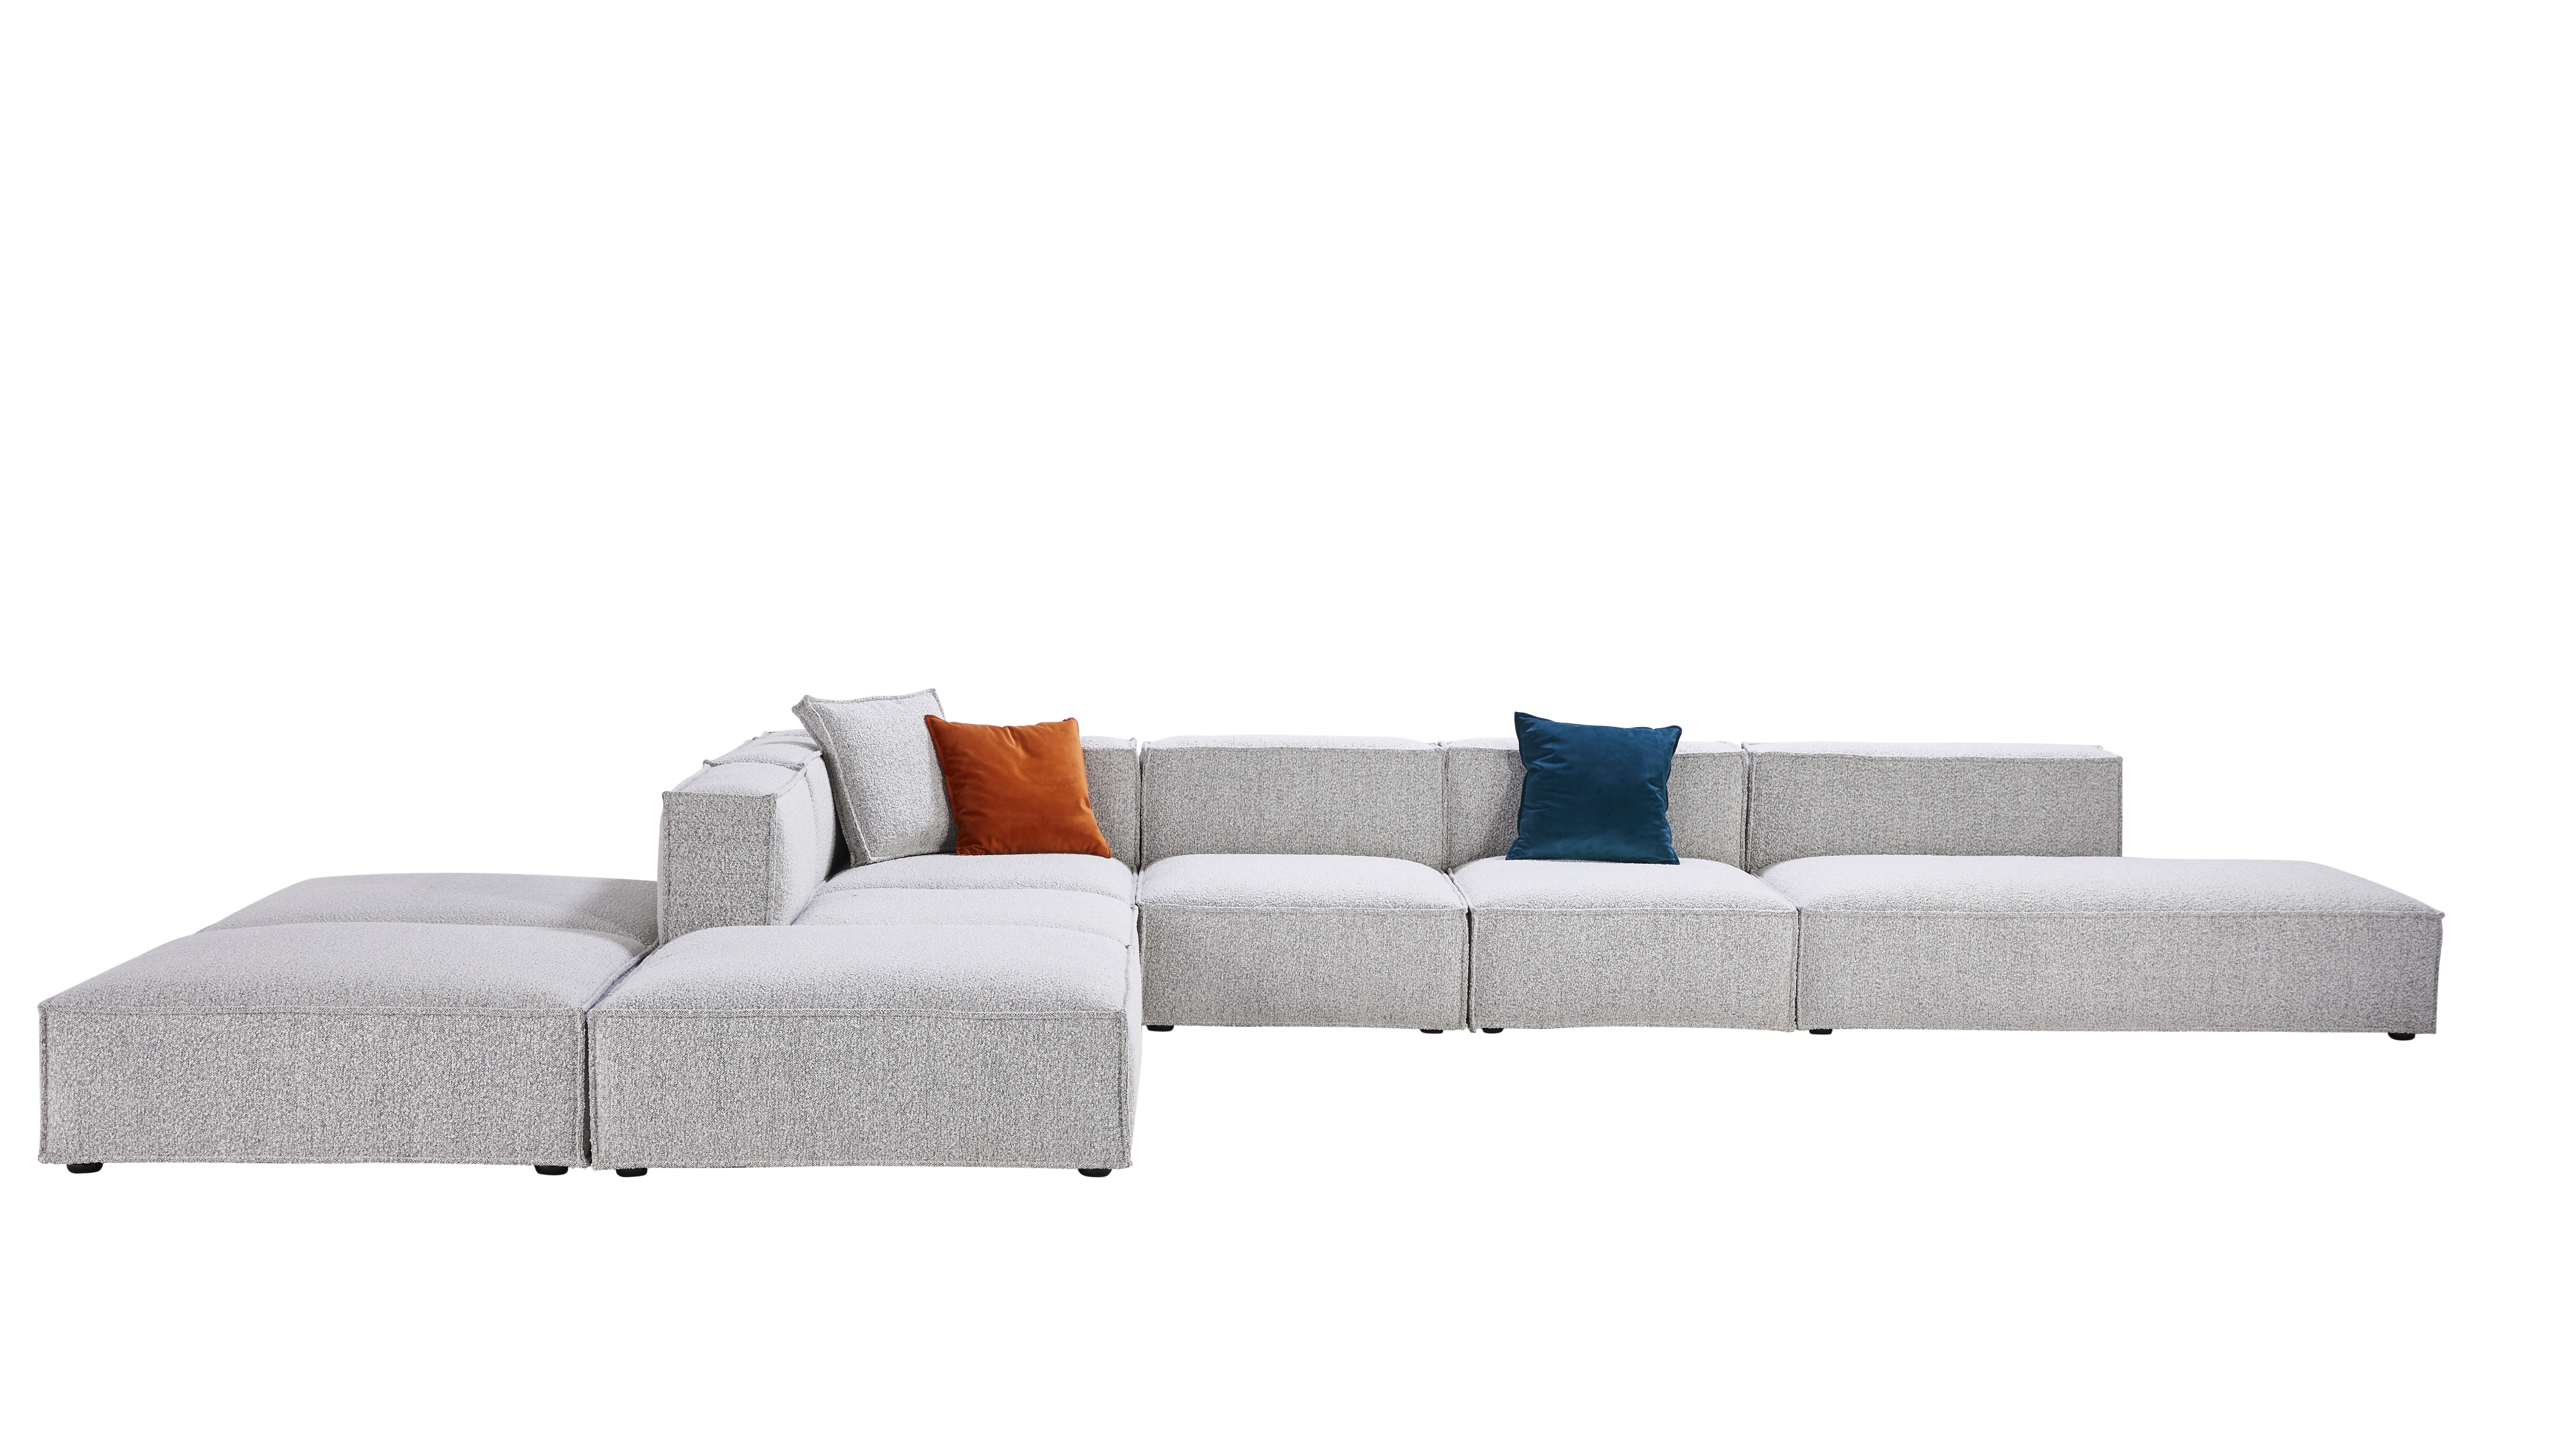 Living room light color sofa